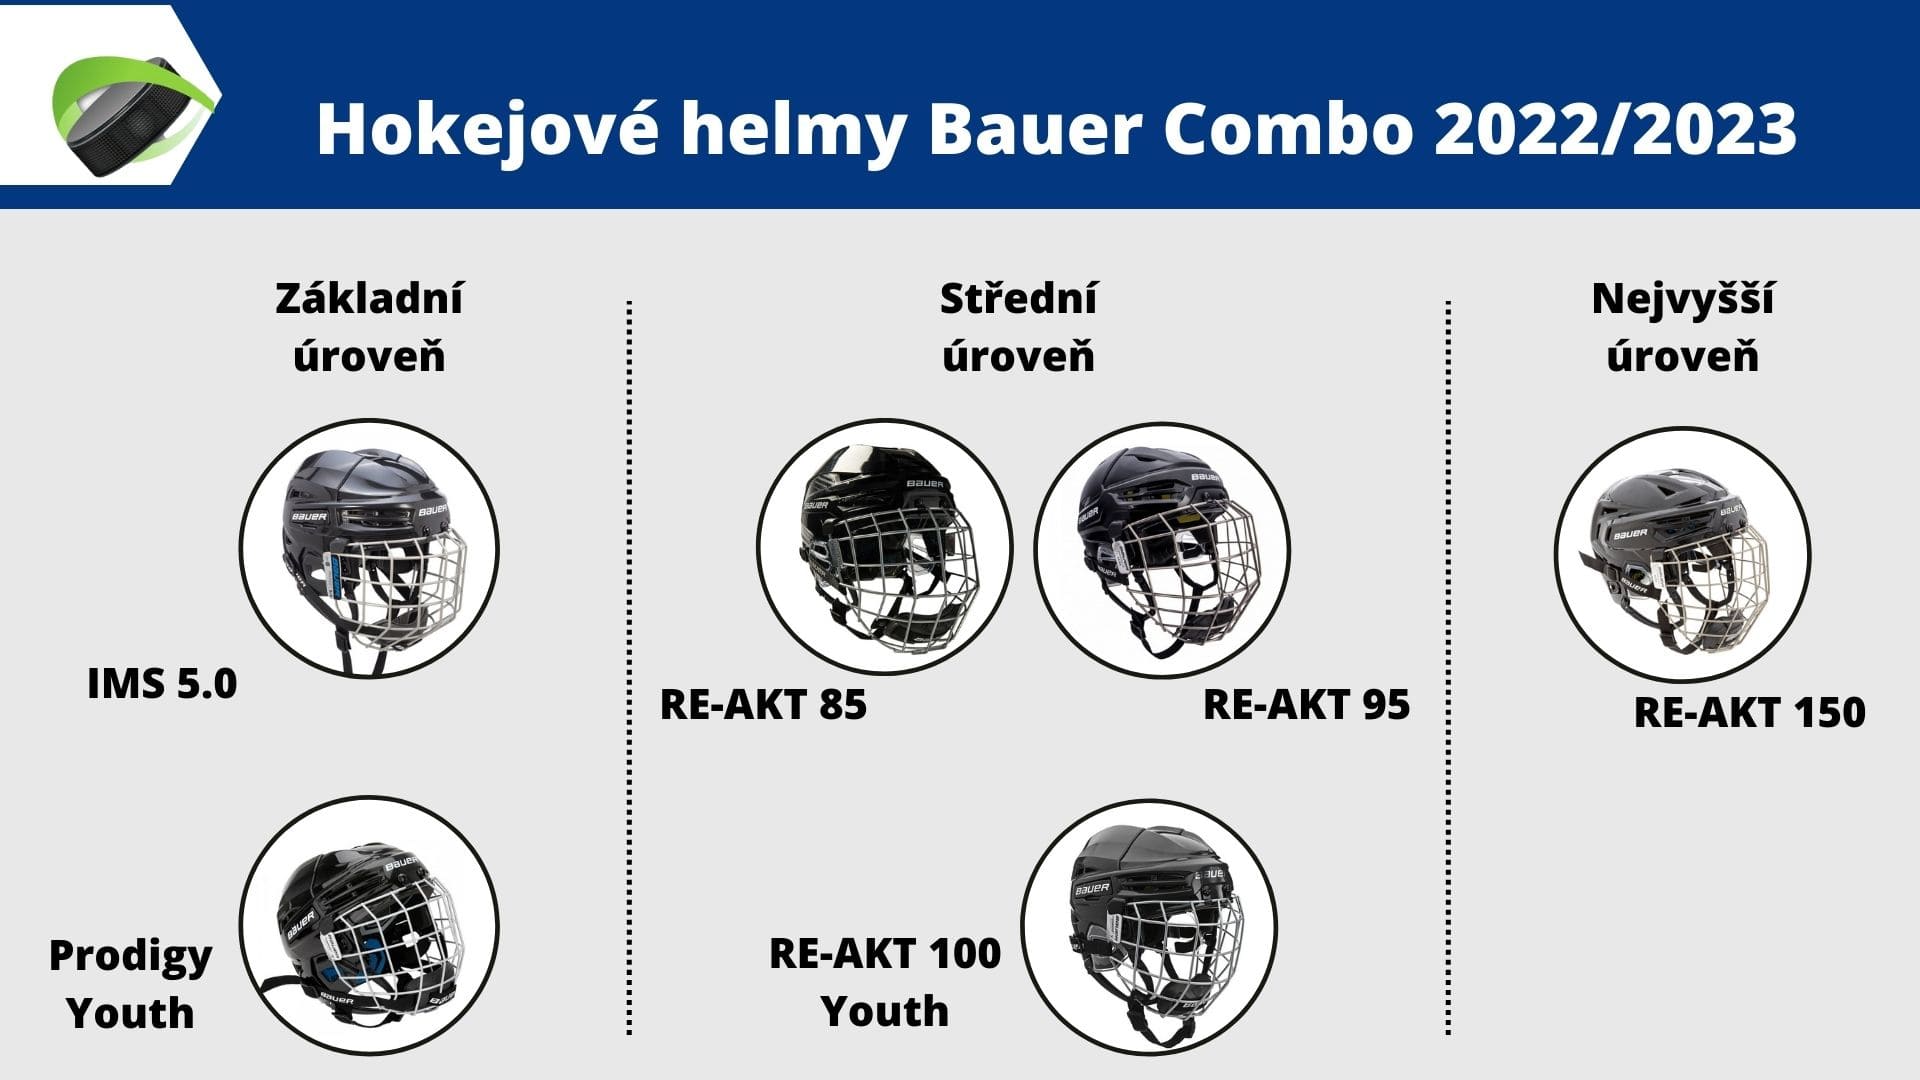 Kompletní přehled helem Bauer Combo 2022 / 2023